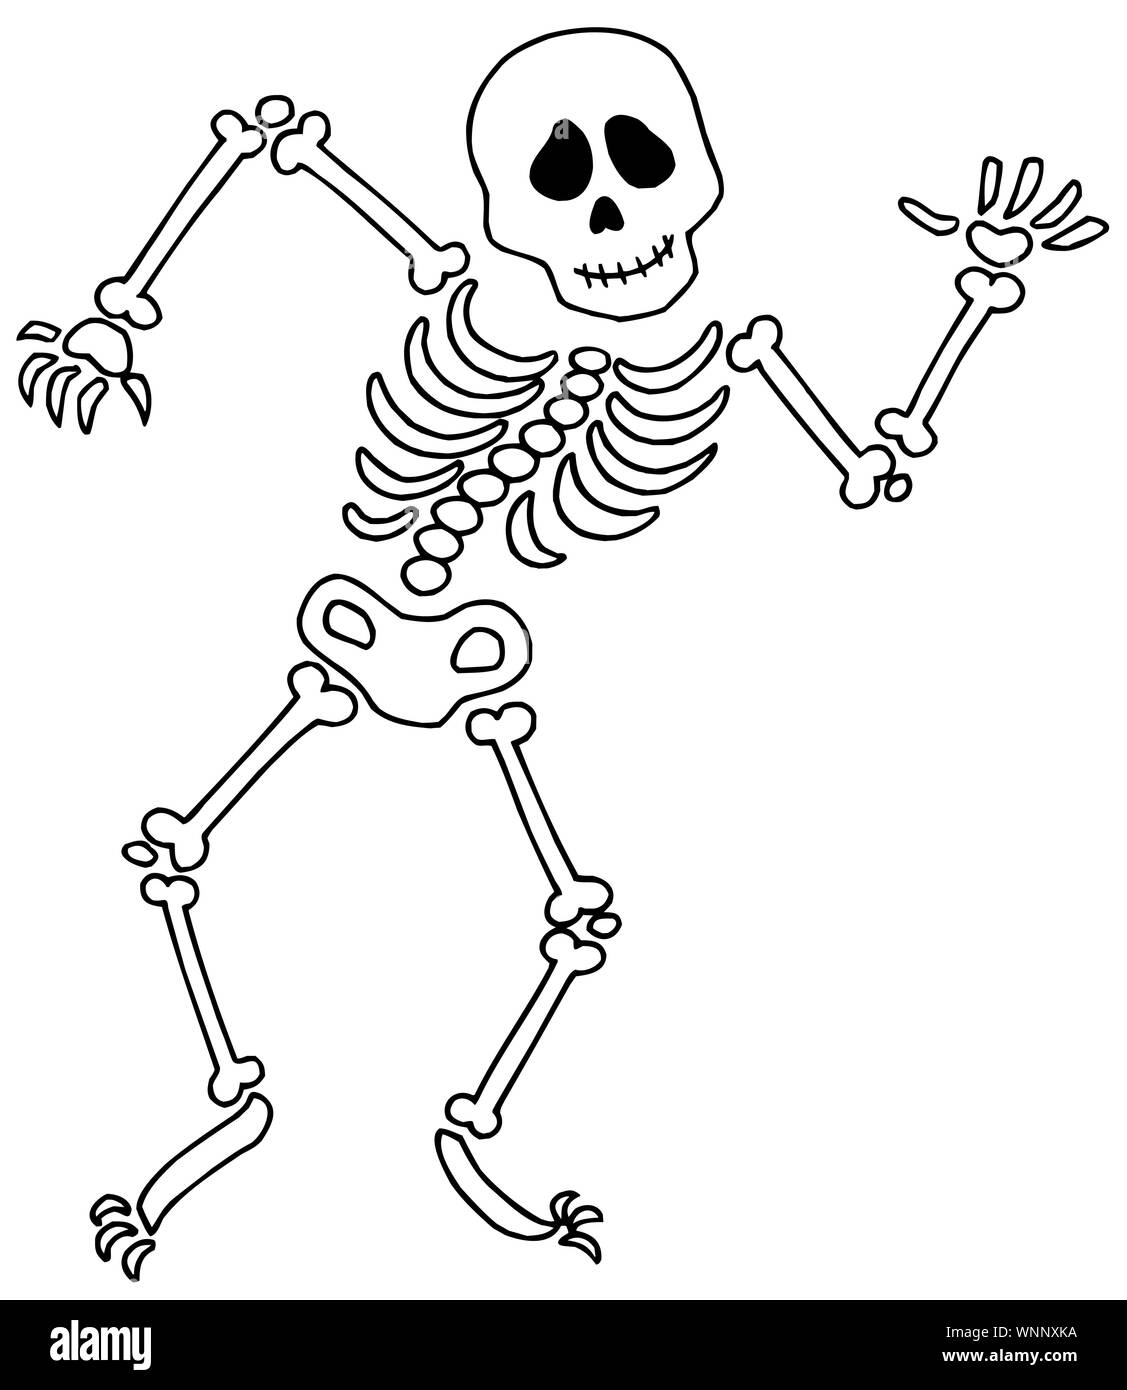 Skeletons Dancing. 